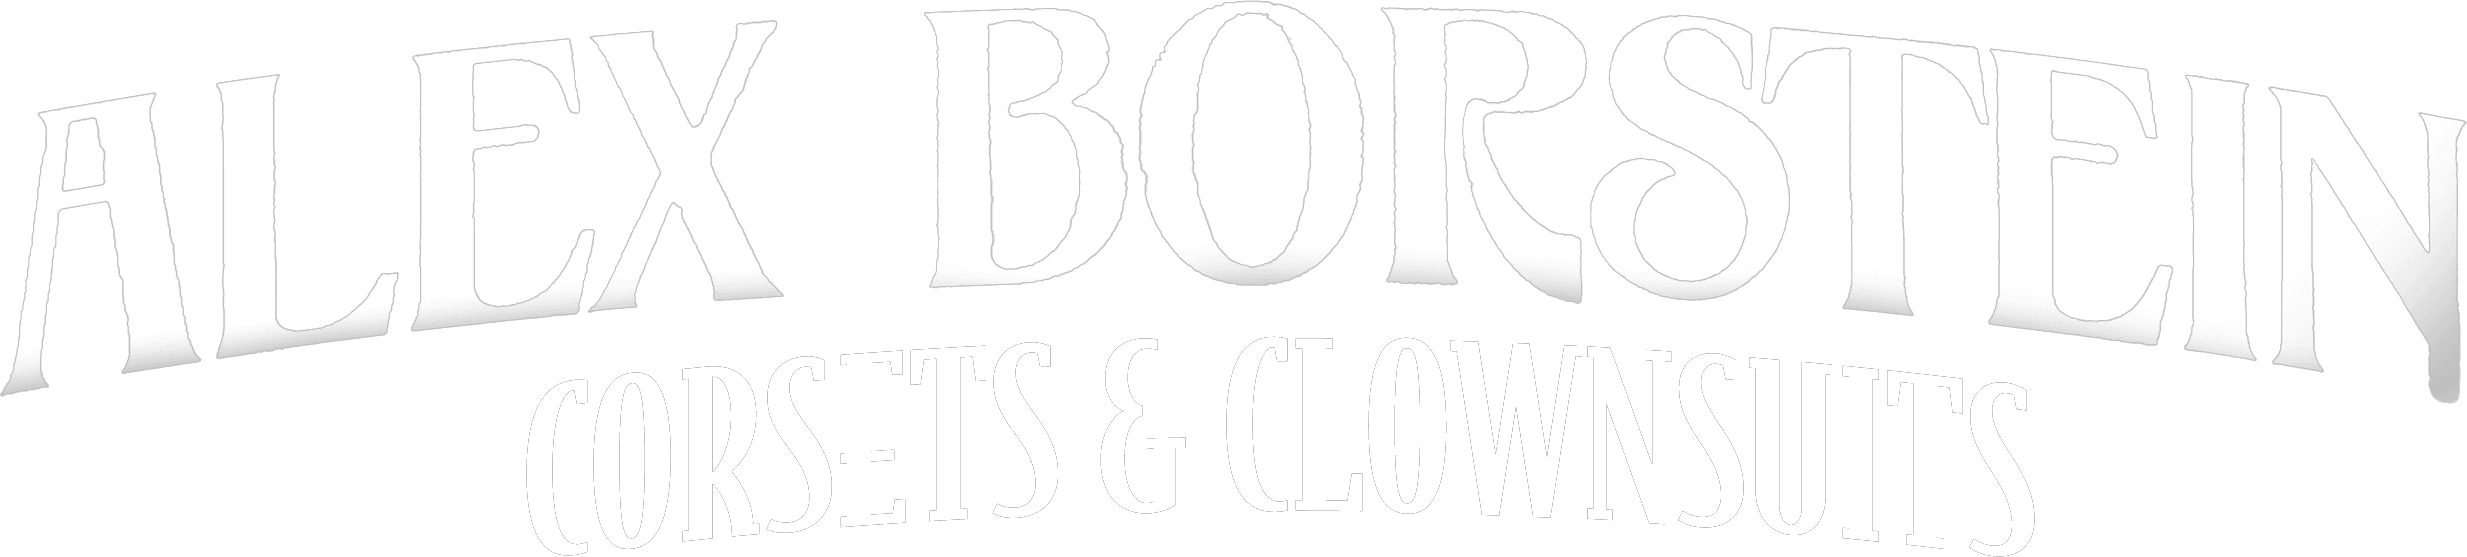 Alex Borstein: Corsets & Clown Suits logo